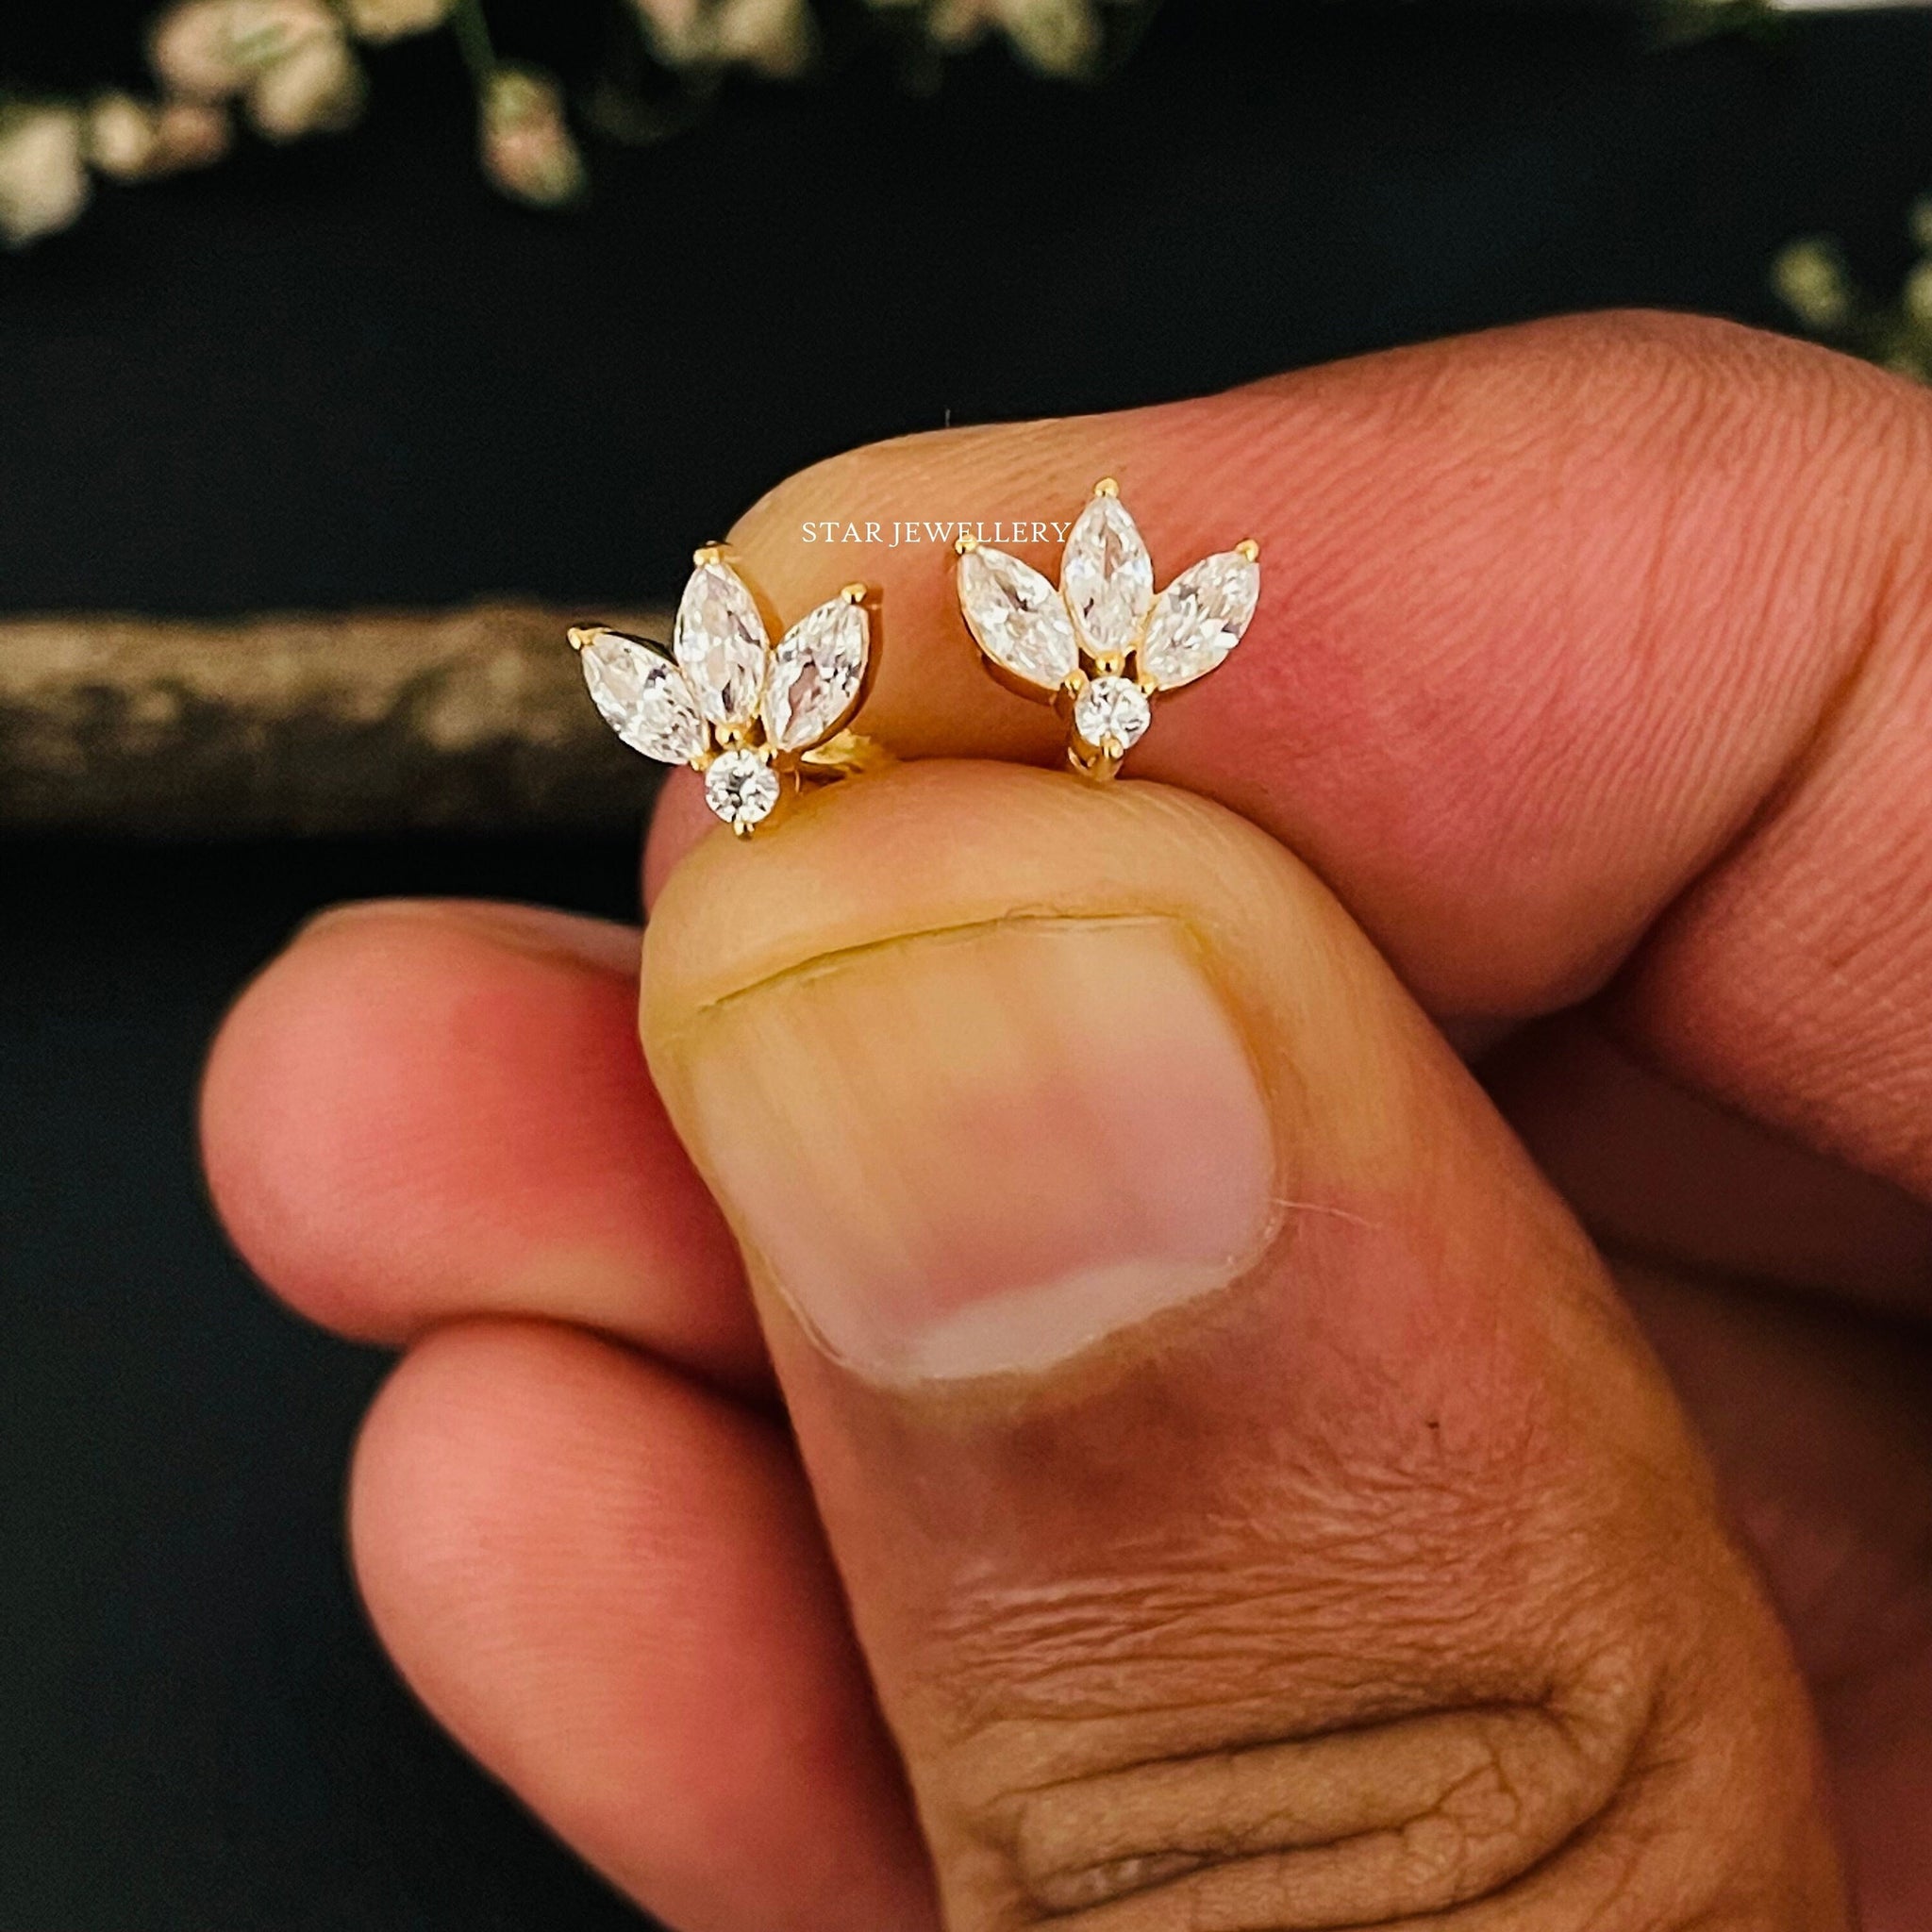 Piercing d'oreille de goujon de lotus en diamant naturel, boucle d'oreille de goujon de lotus en or massif 14K, goujons de lotus pour lobe, conque, tragus, helix tragus, cartilage